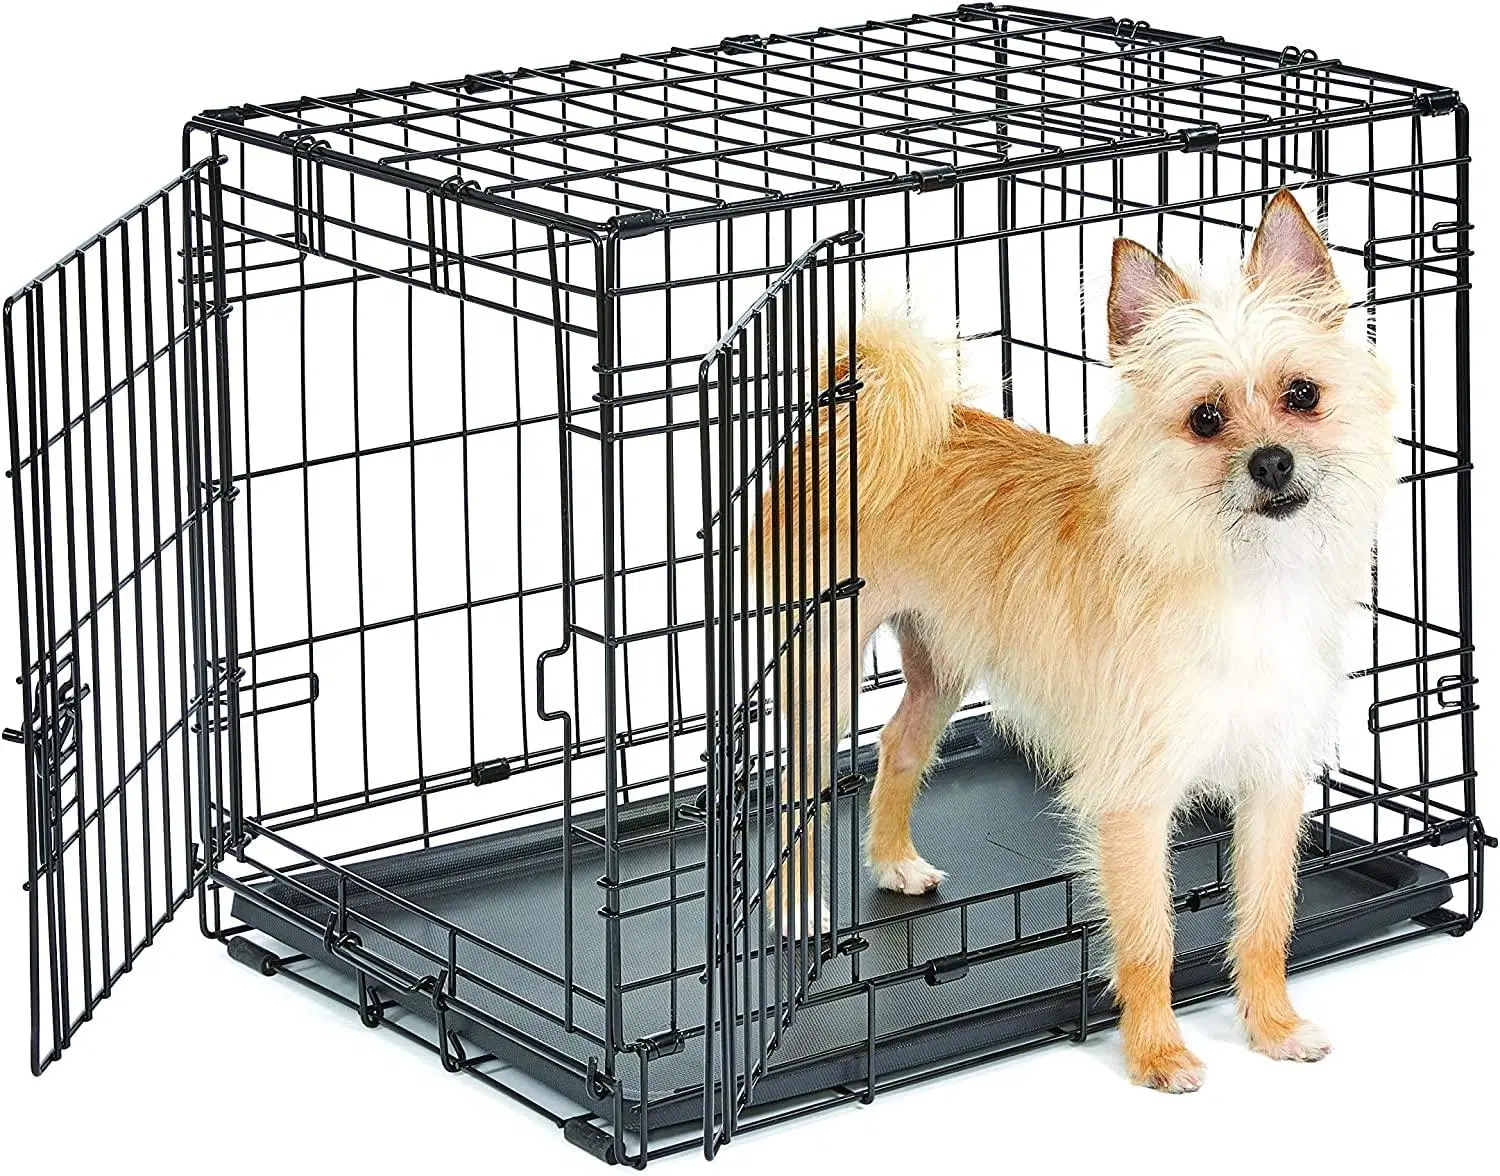 Haute qualité en acier inoxydable métal luxe petites cages d'affichage pour animaux de compagnie pliables pour chiens.